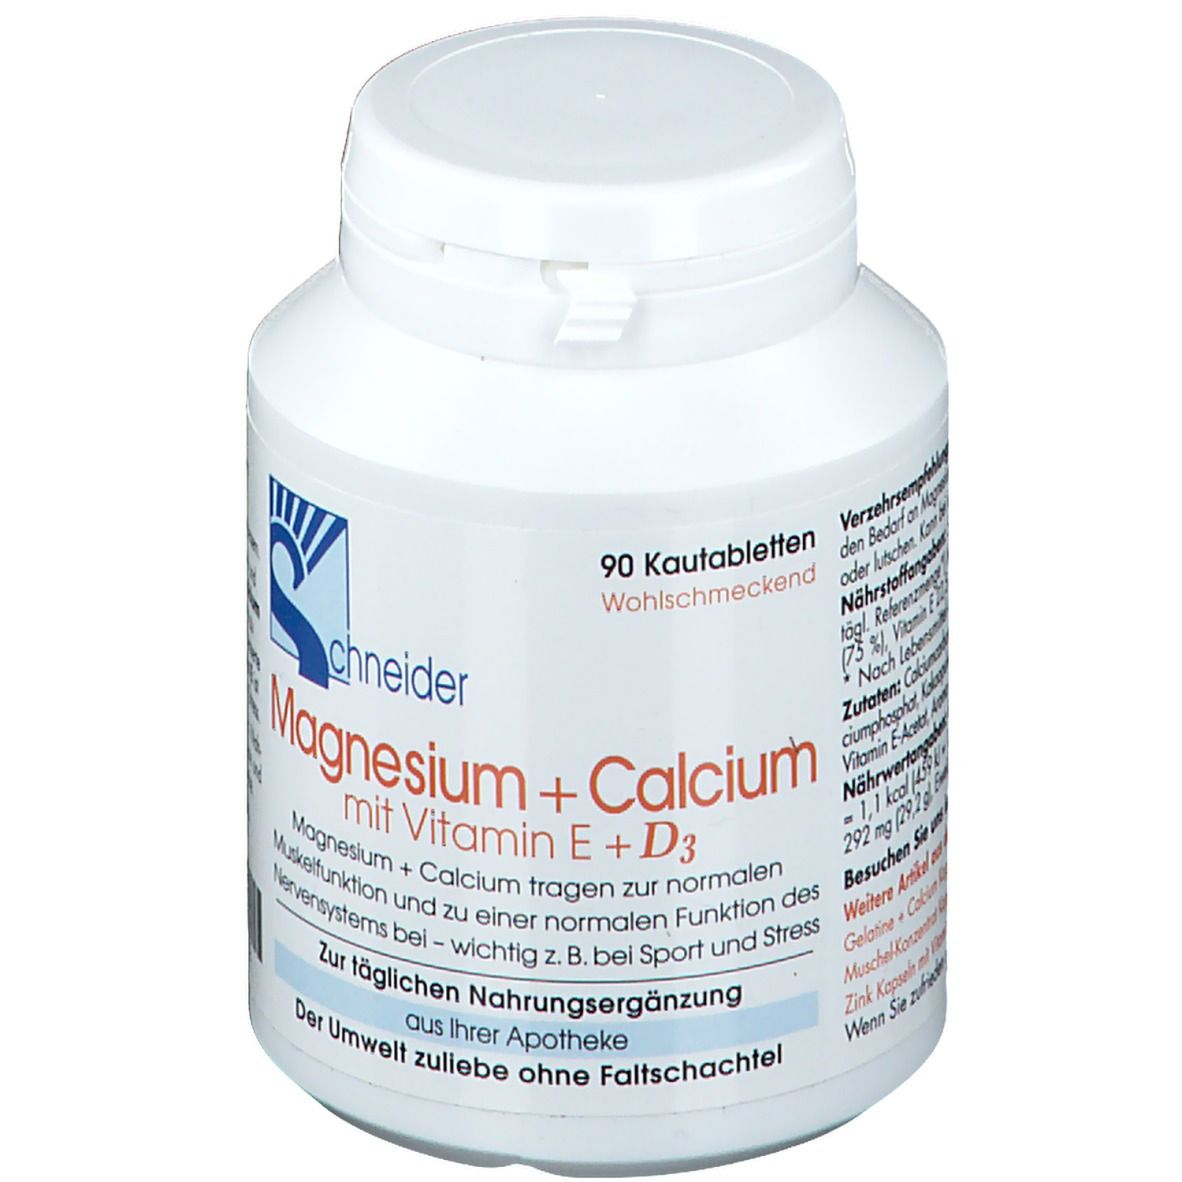 Magnesium + Calcium